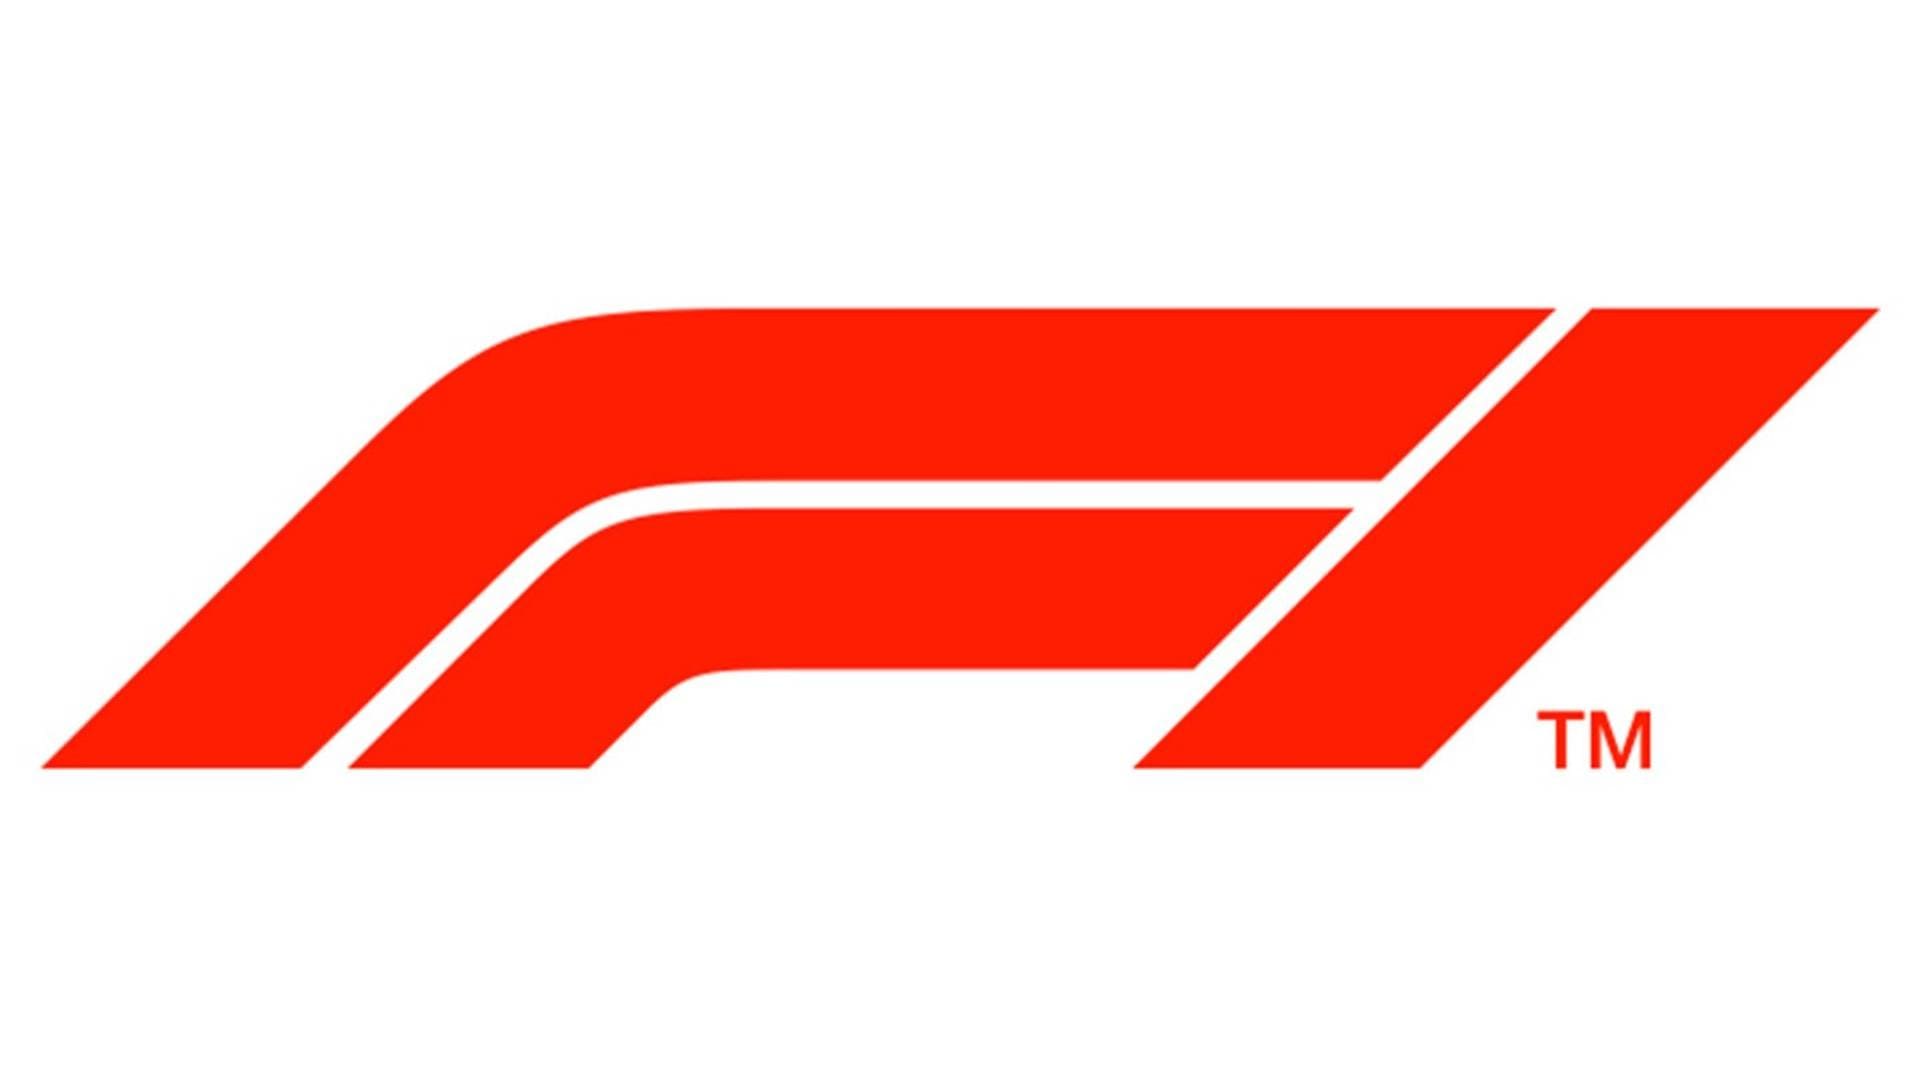 Ricciardo leads a 1-2 victory for McLaren in Italian Grand Prix